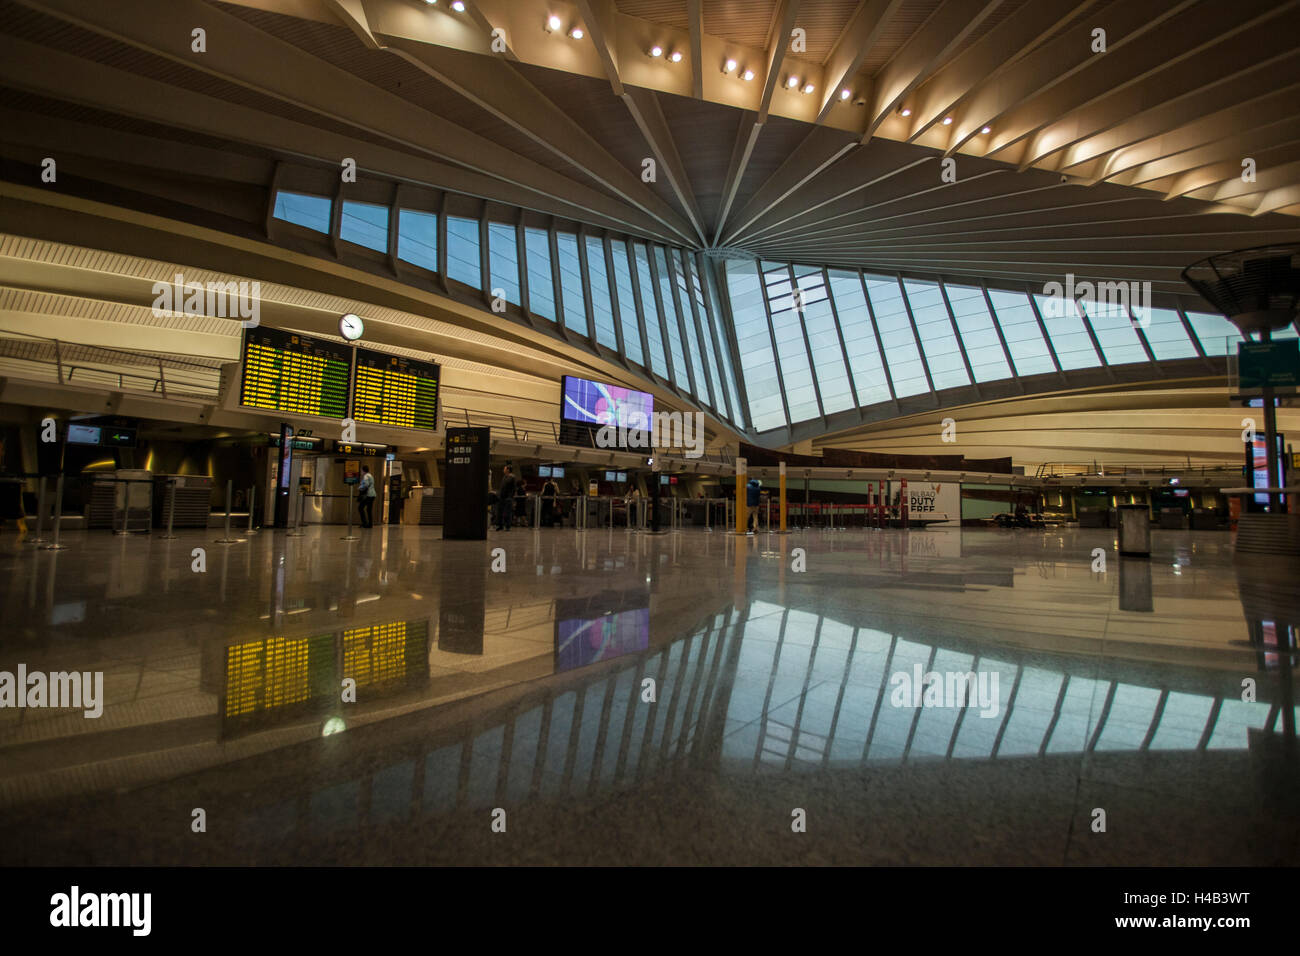 Aeroporto interno, scheda di destinazione, Bilbao, Spagna Foto Stock